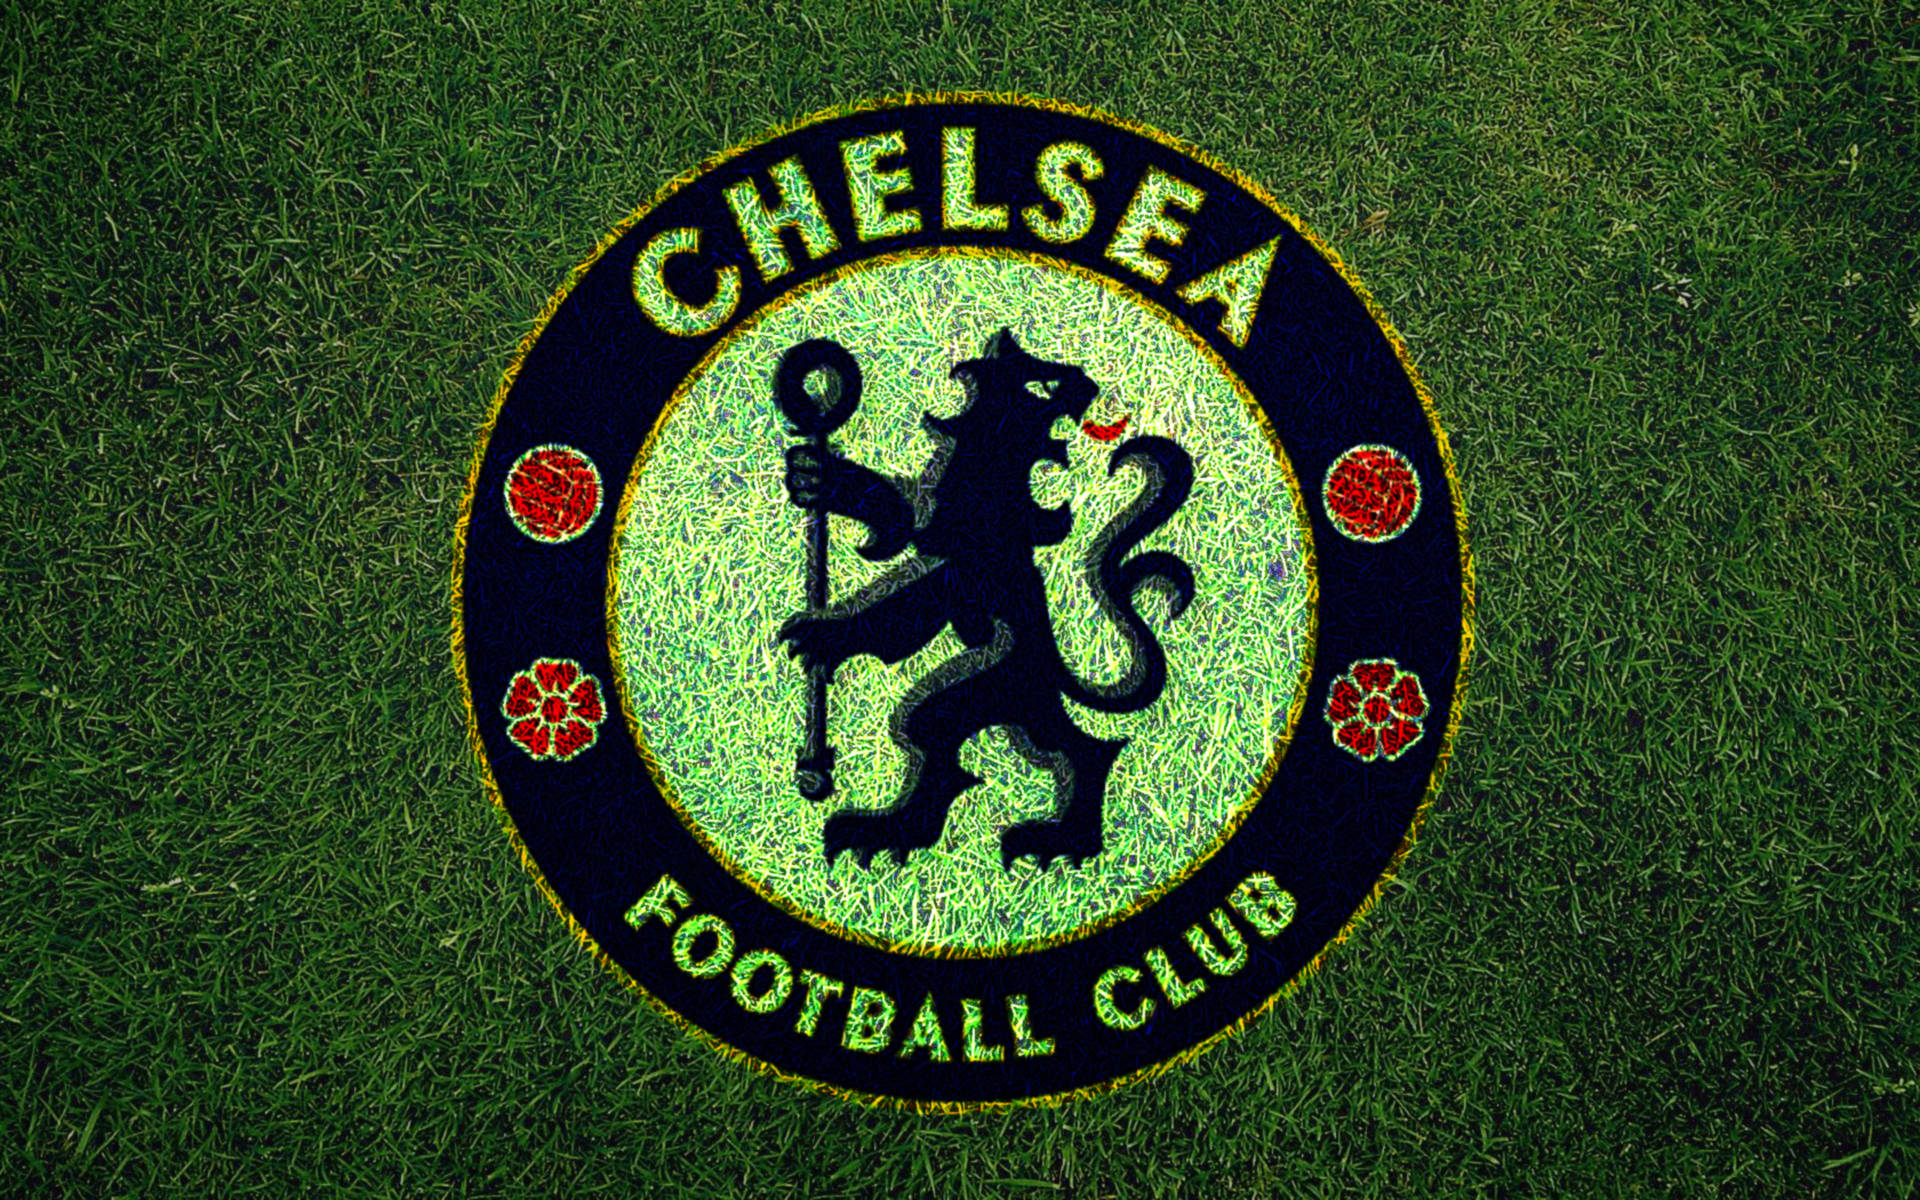 Chelsea Logo On Grass Wallpaper